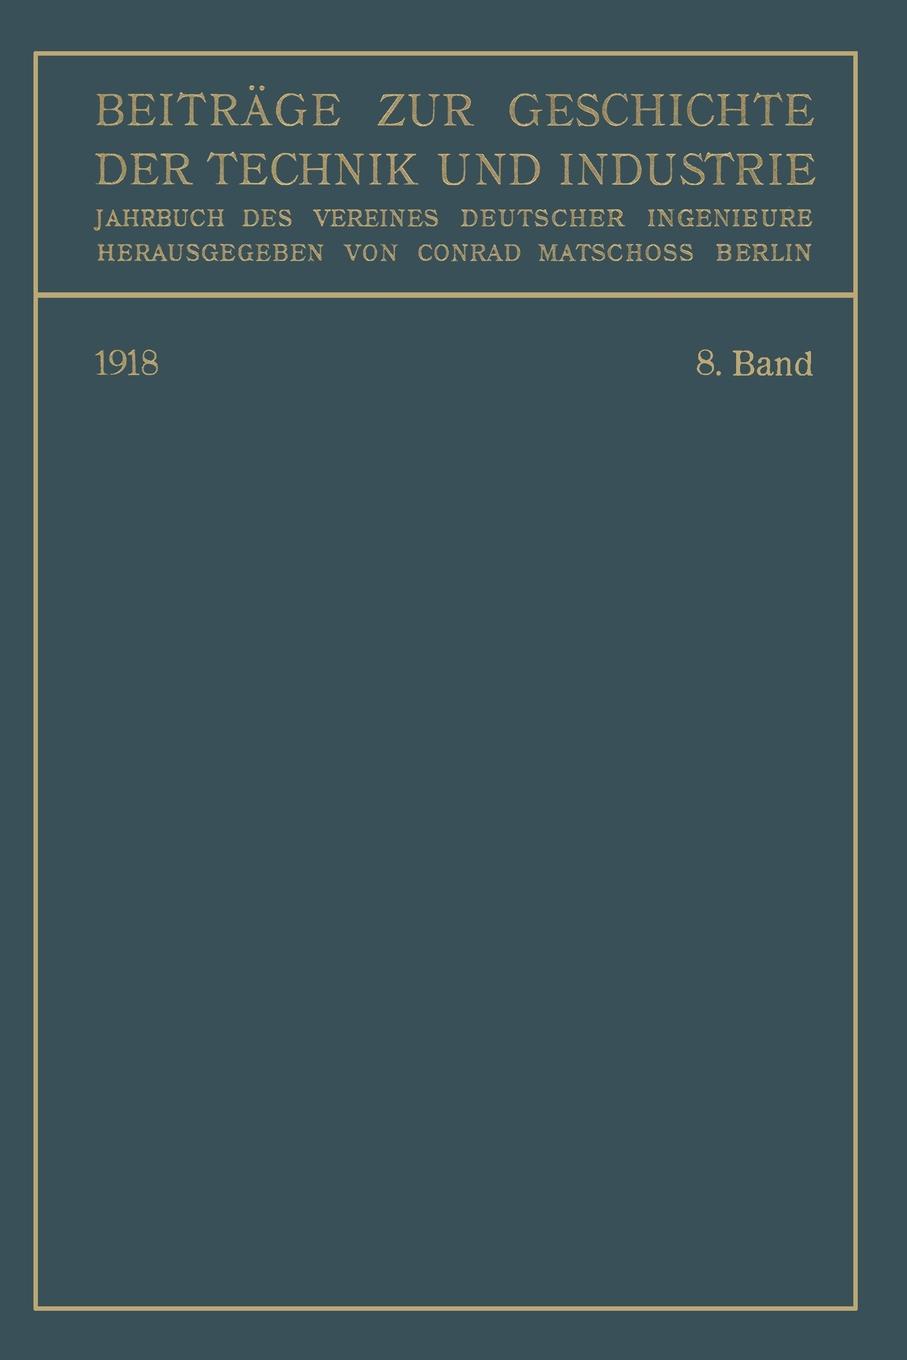 Beitrage Zur Geschichte Der Technik Und Industrie. Jahrbuch Des Vereines Deutscher Ingenieure. Achter Band